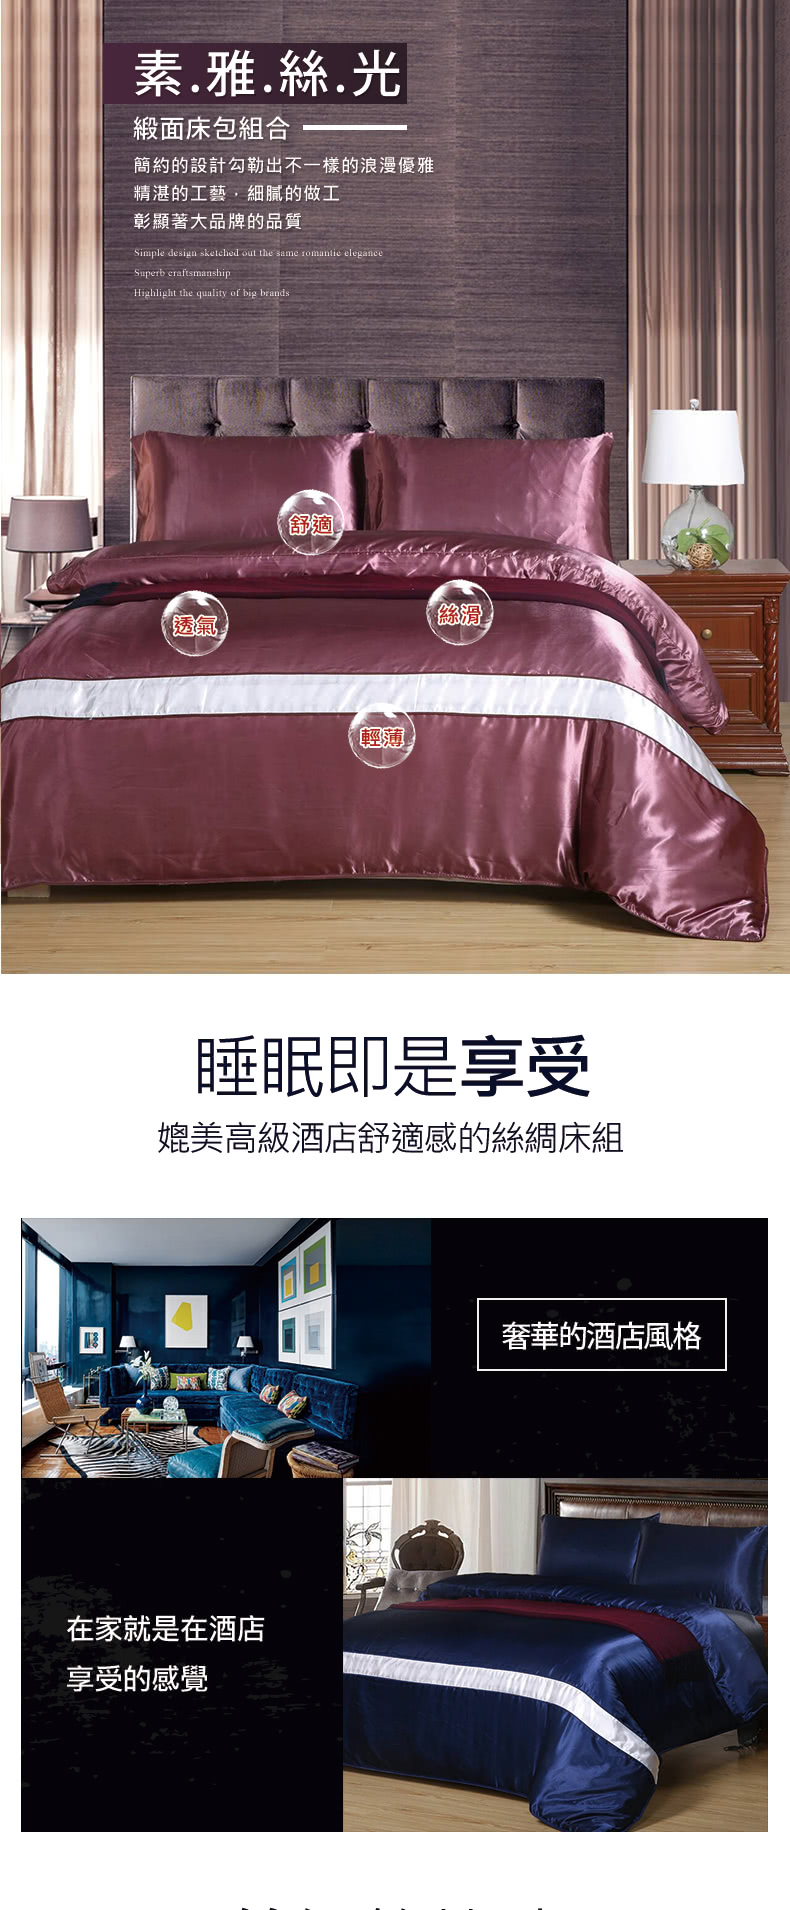 18nino81 素雅絲光緞面床包被套組 雙人5尺四件組一組多款可選 Momo購物網